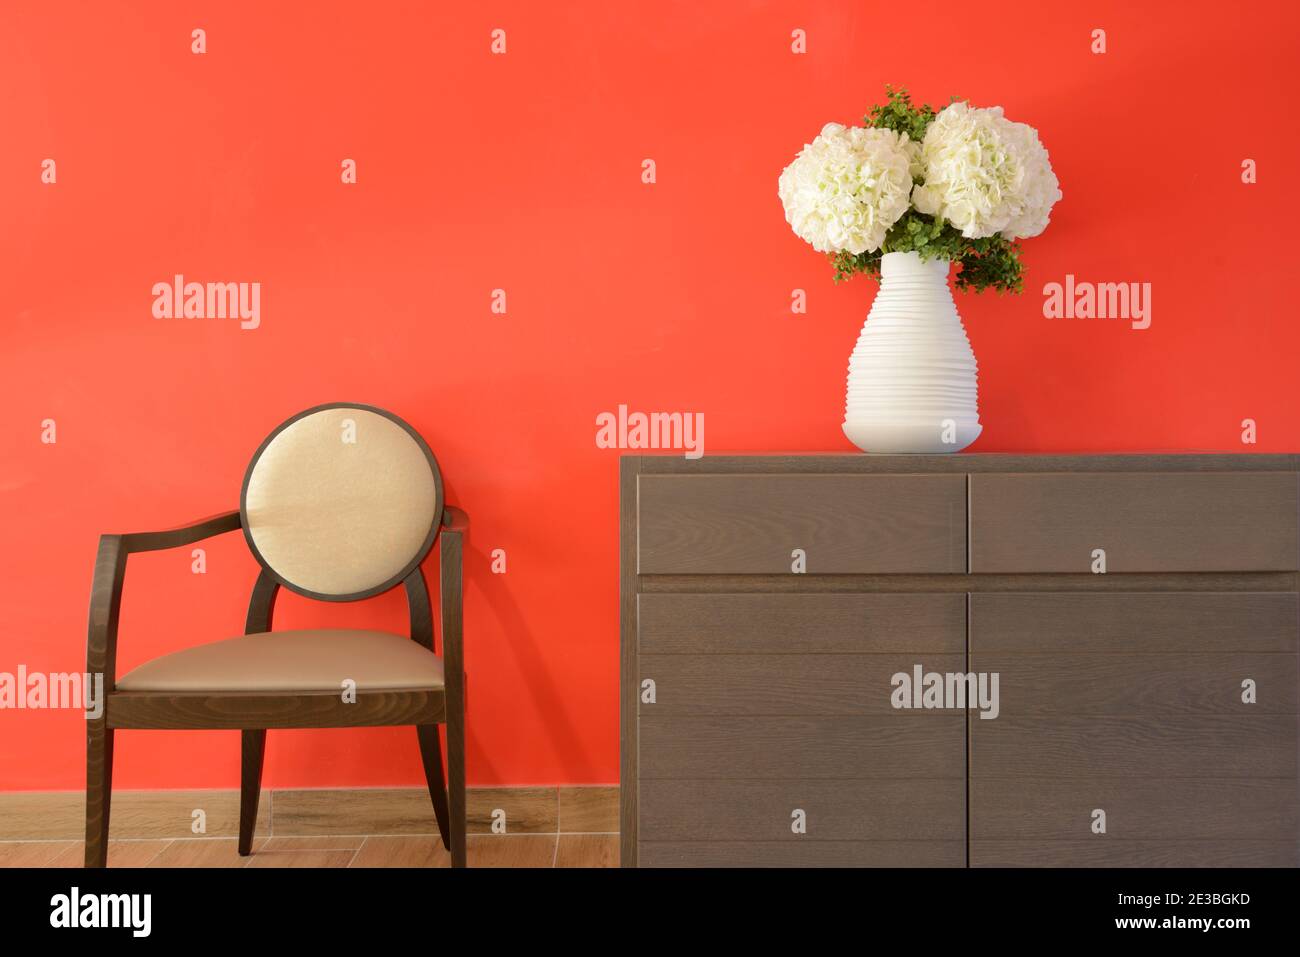 Minimalistisches Interieur mit roter Wand und künstliche weiße Blumen oder Nelken in weißer Vase & moderner Holzstuhl Stockfoto